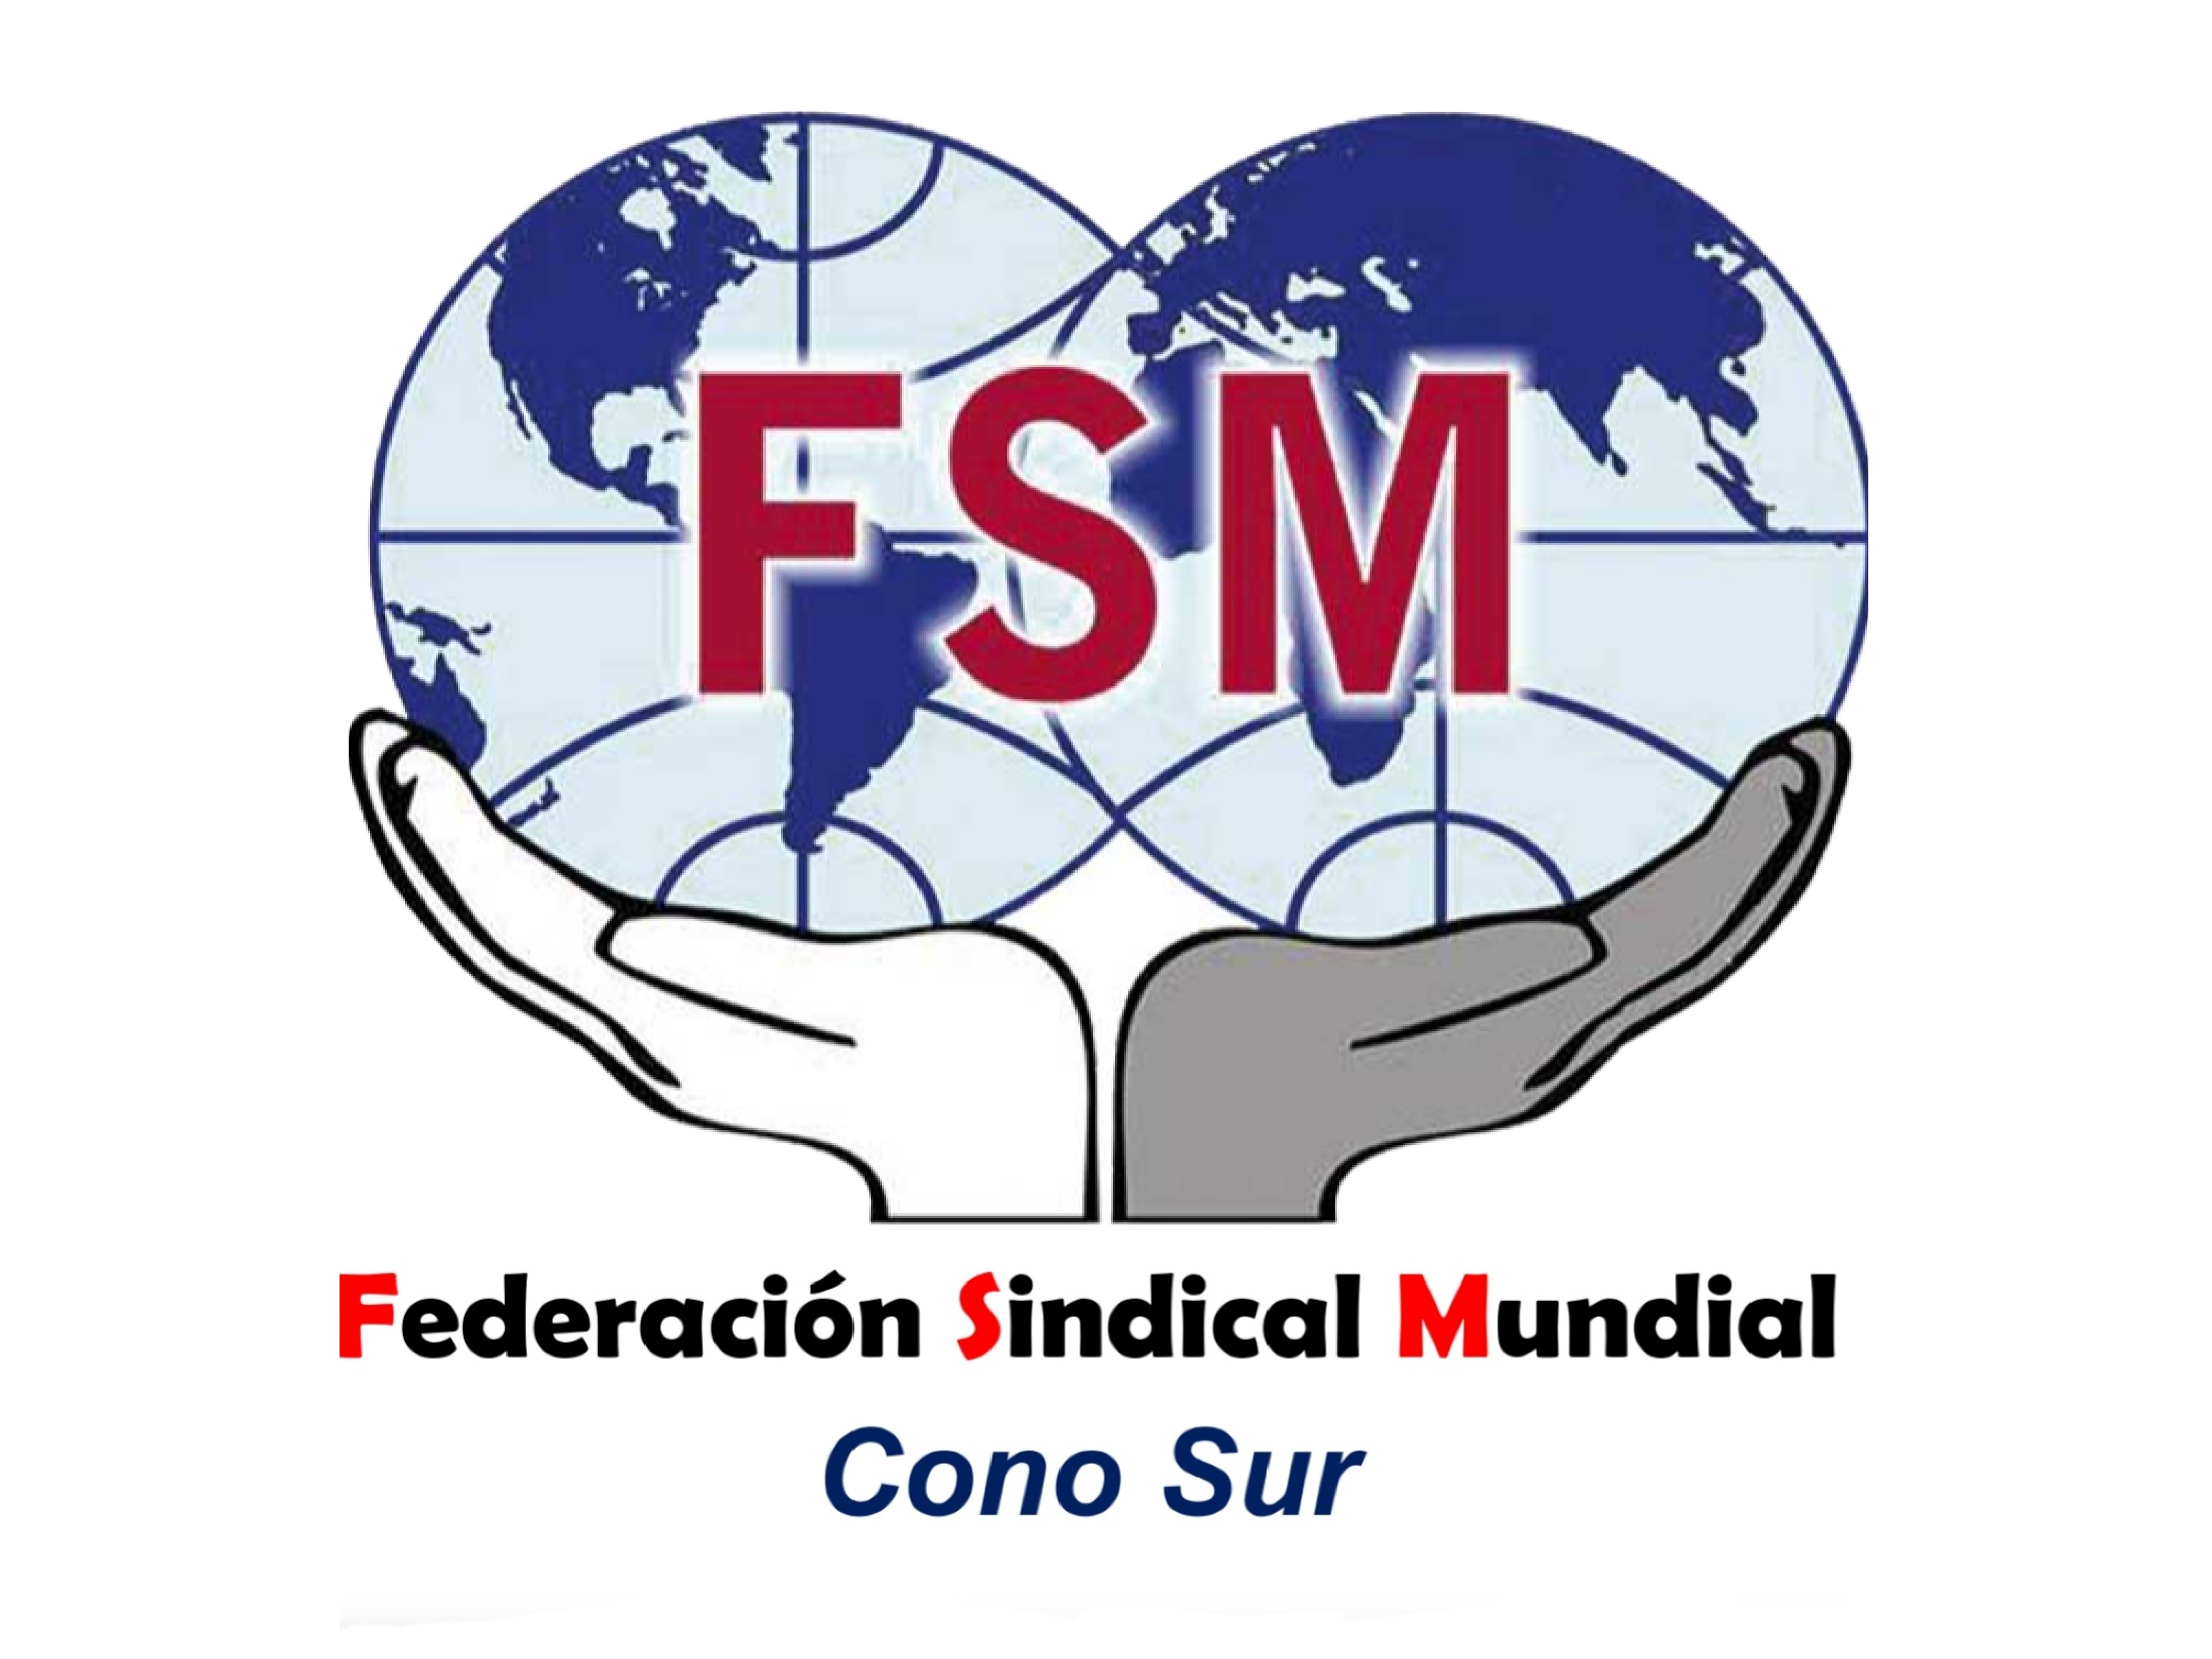 La Federación Sindical Mundial del cono sur, expresa su solidaridad internacionalista con la STM-Intersindical valenciana y las compañeras y compañeros de Ford Almussafes